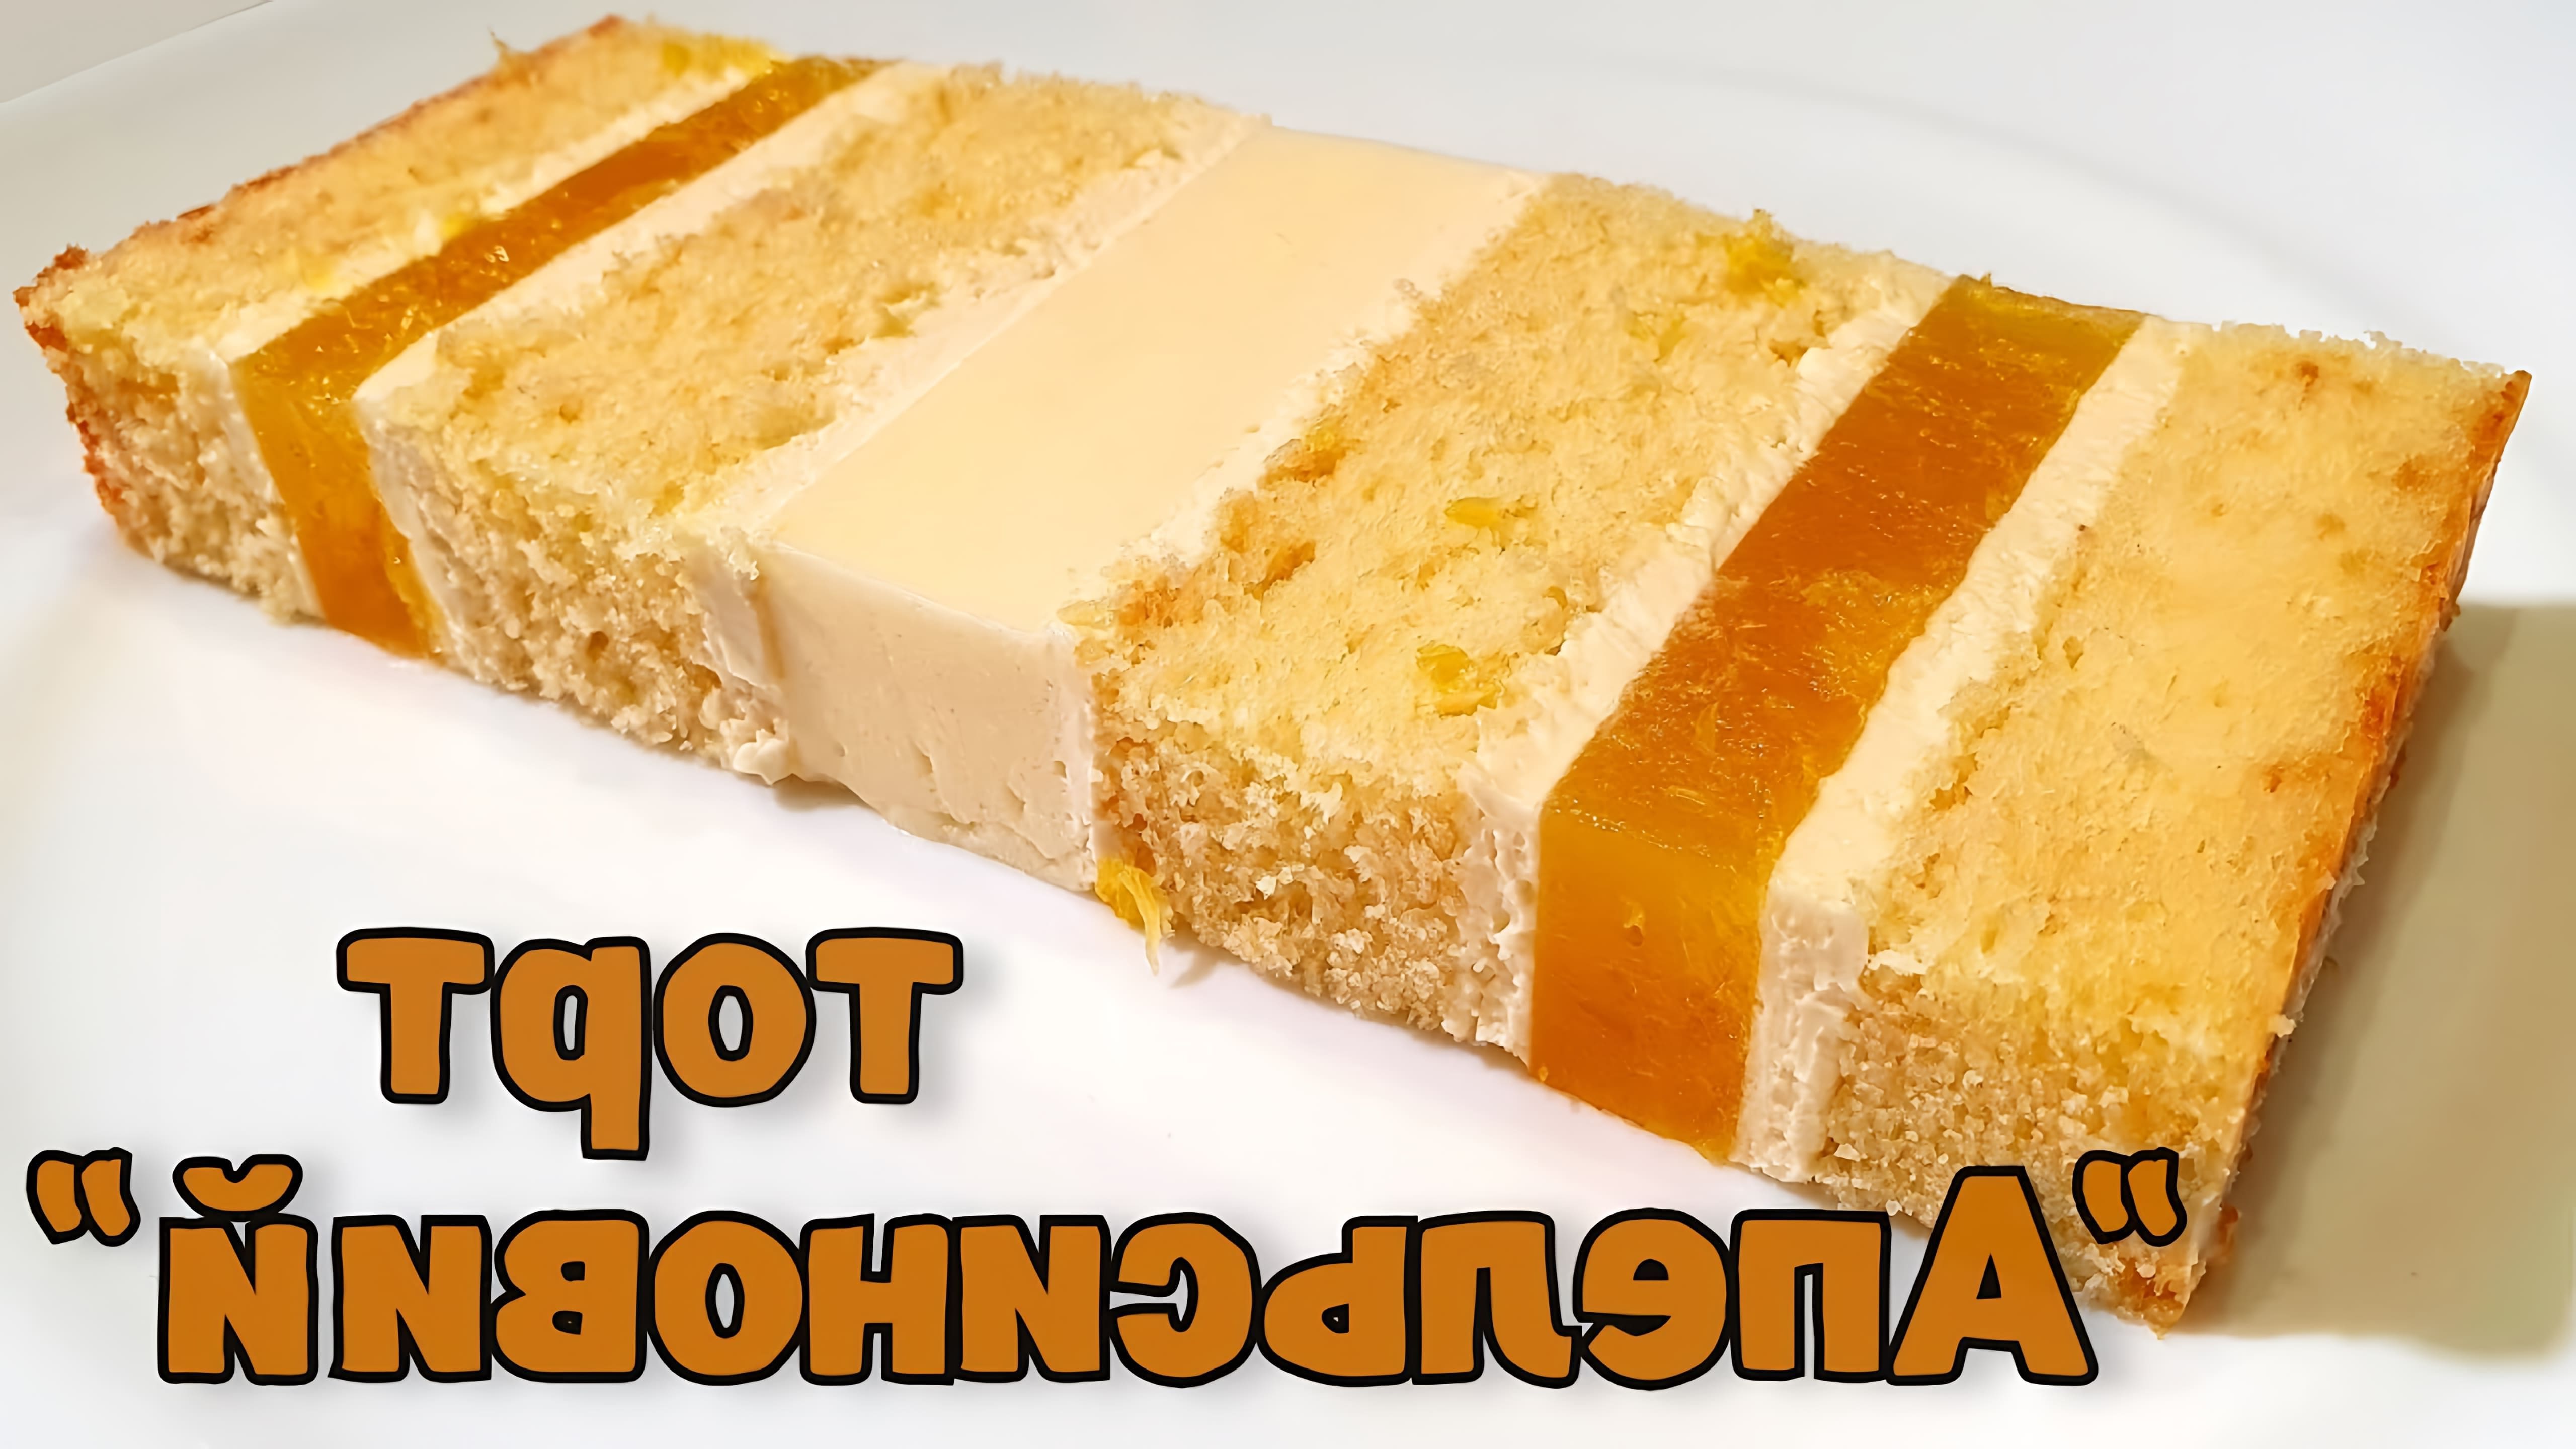 В этом видео демонстрируется рецепт апельсинового торта, состоящего из нежных сливочных бисквитов, крема чиз на белом шоколаде, а также в прослойке с апельсиновым компоти и апельсиновым мусом